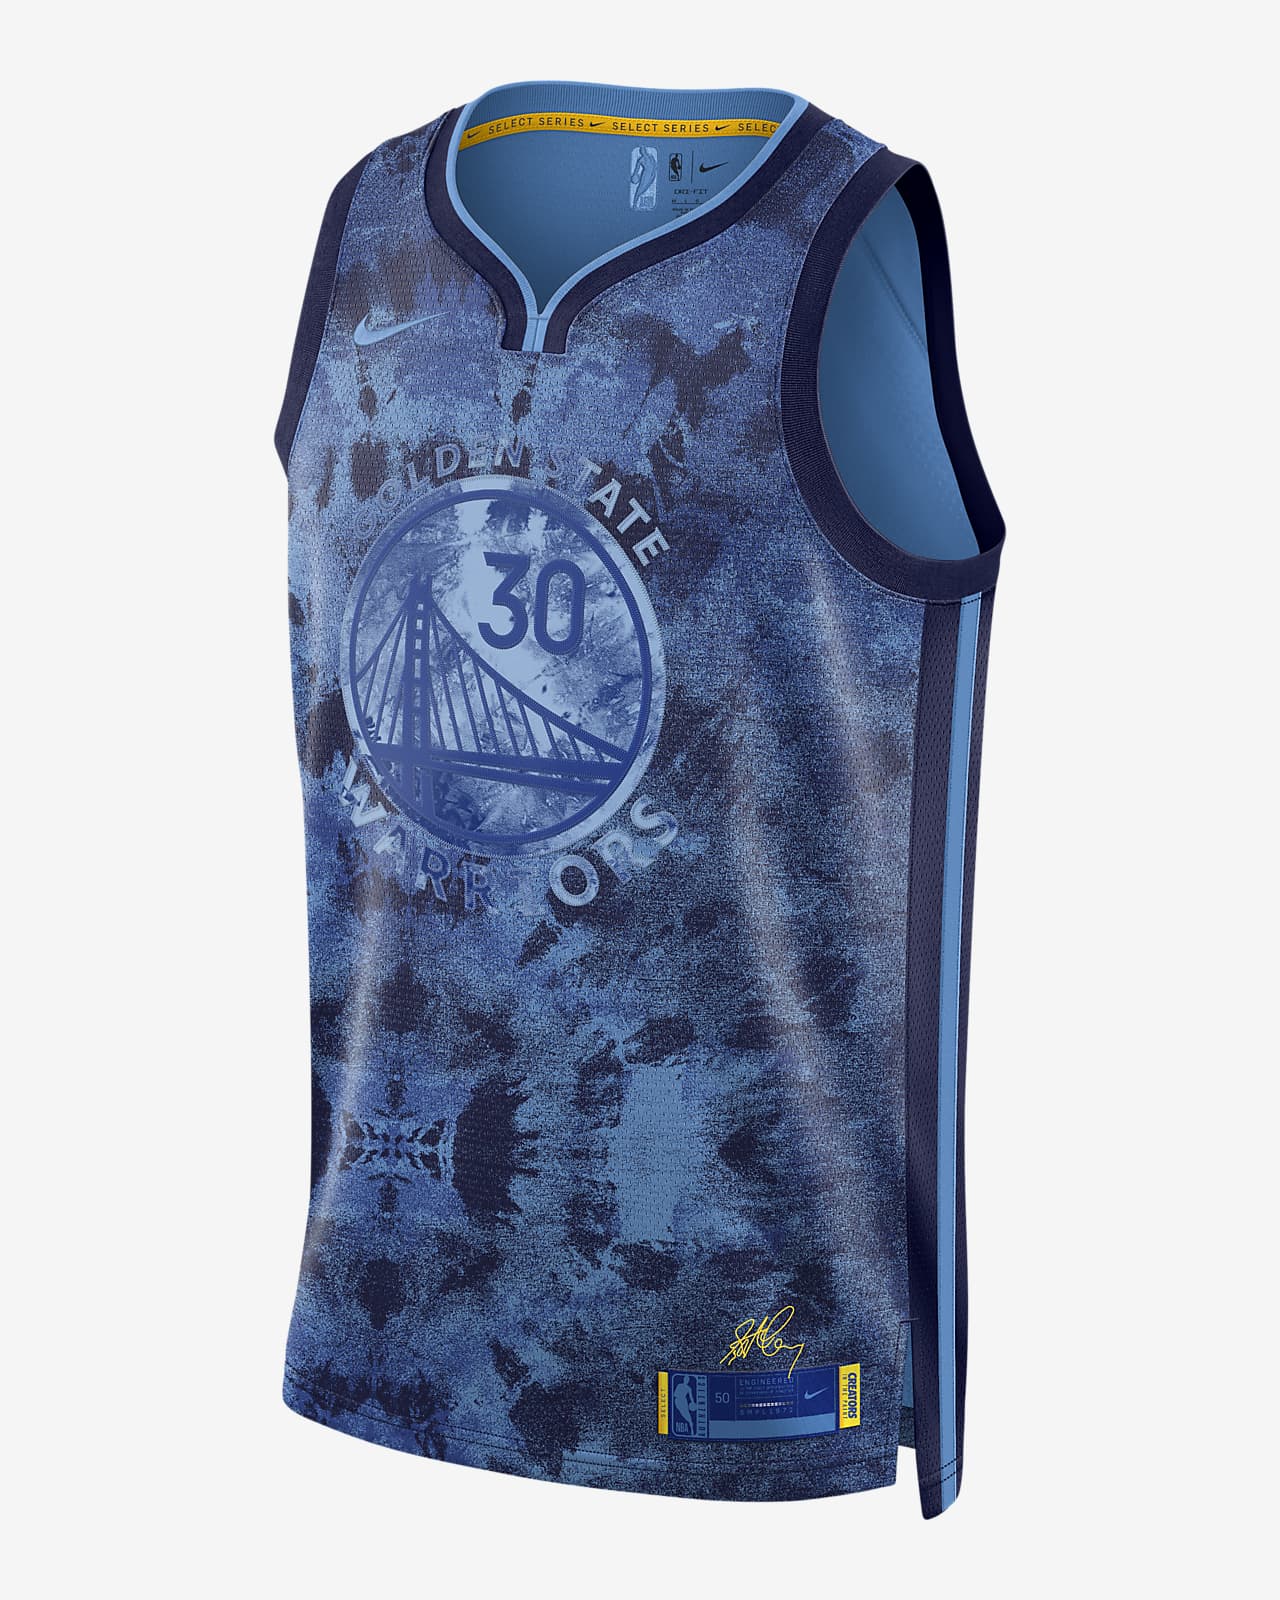 2022/23 赛季金州勇士队 (Stephen Curry) Select Series Nike Dri-FIT NBA Jersey 男子球衣